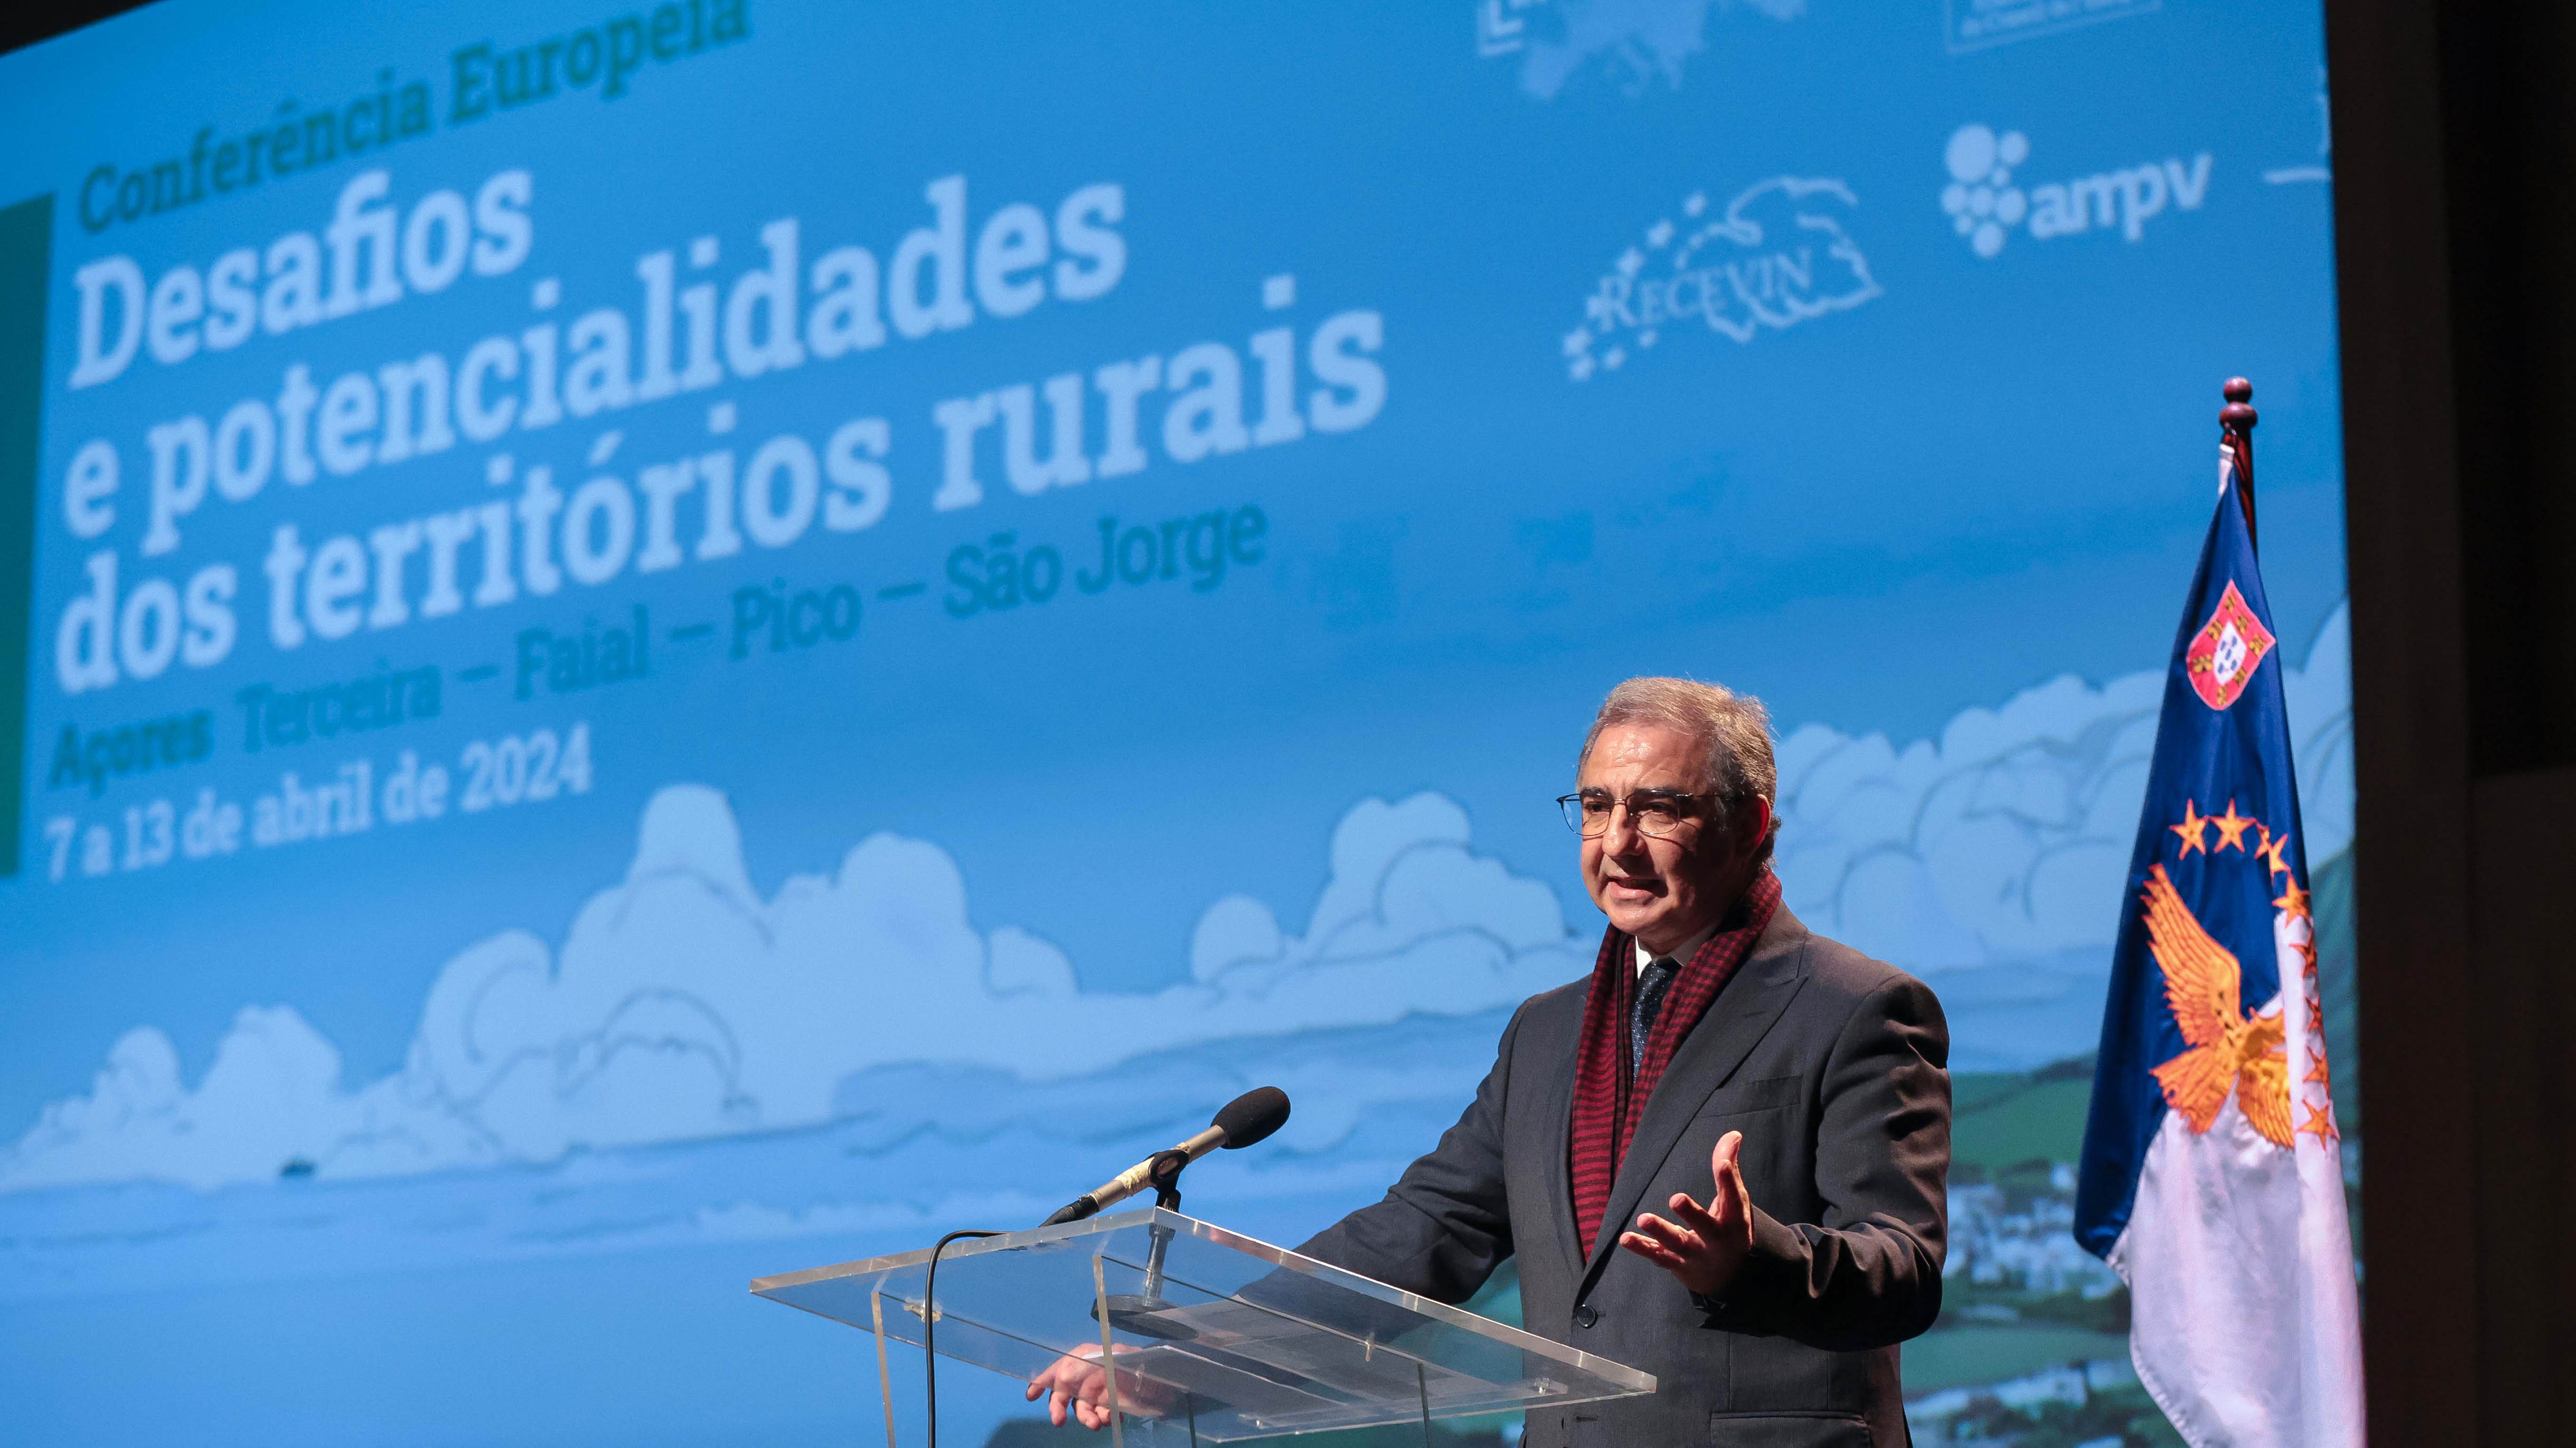 Conferência europeia “Desafios e potencialidades dos territórios rurais”